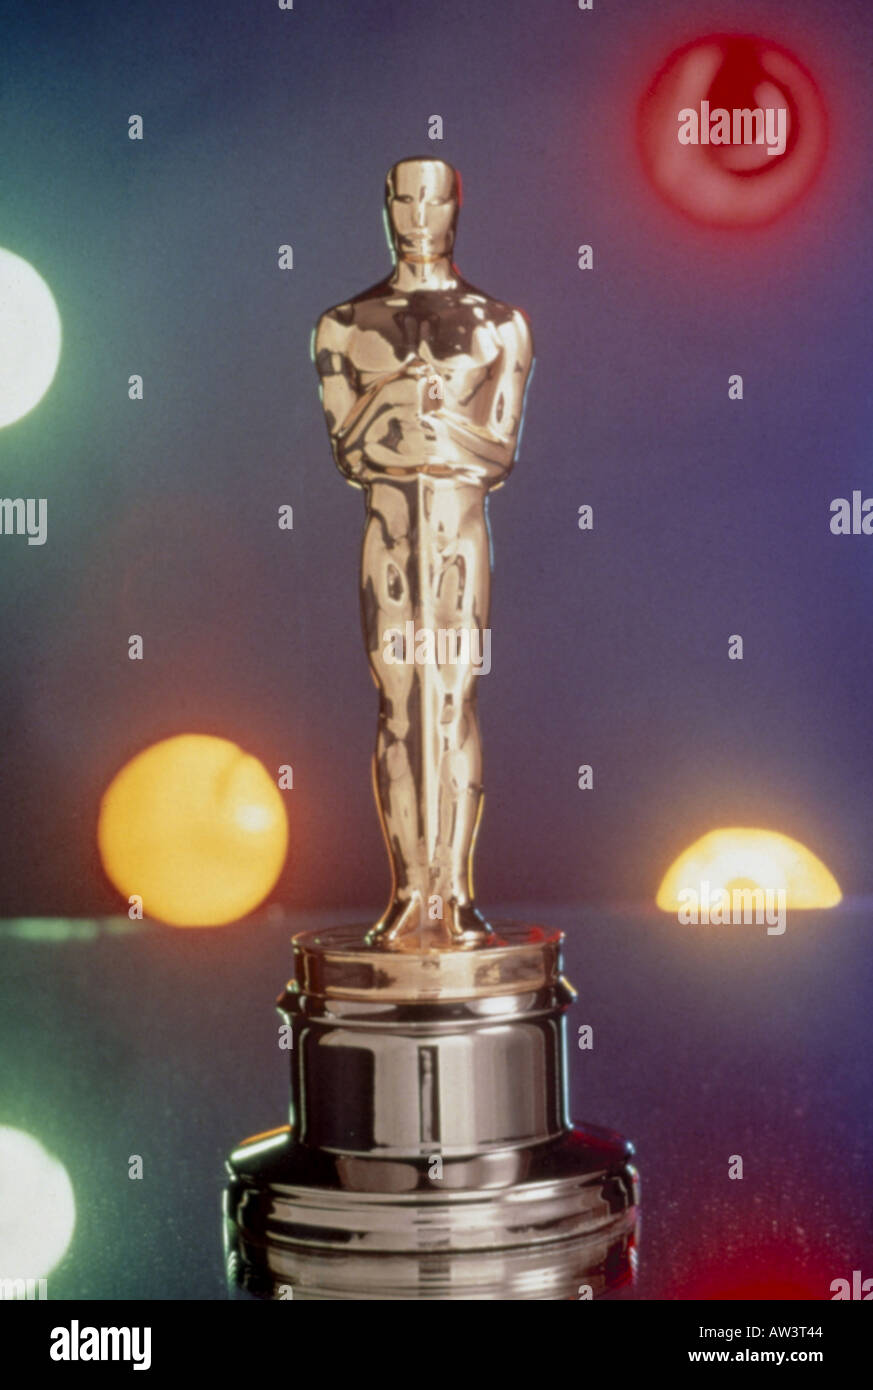 Statuette OSCAR célèbre film award par l'American Academy of Motion Picture Arts and Sciences - voir description ci-dessous Banque D'Images